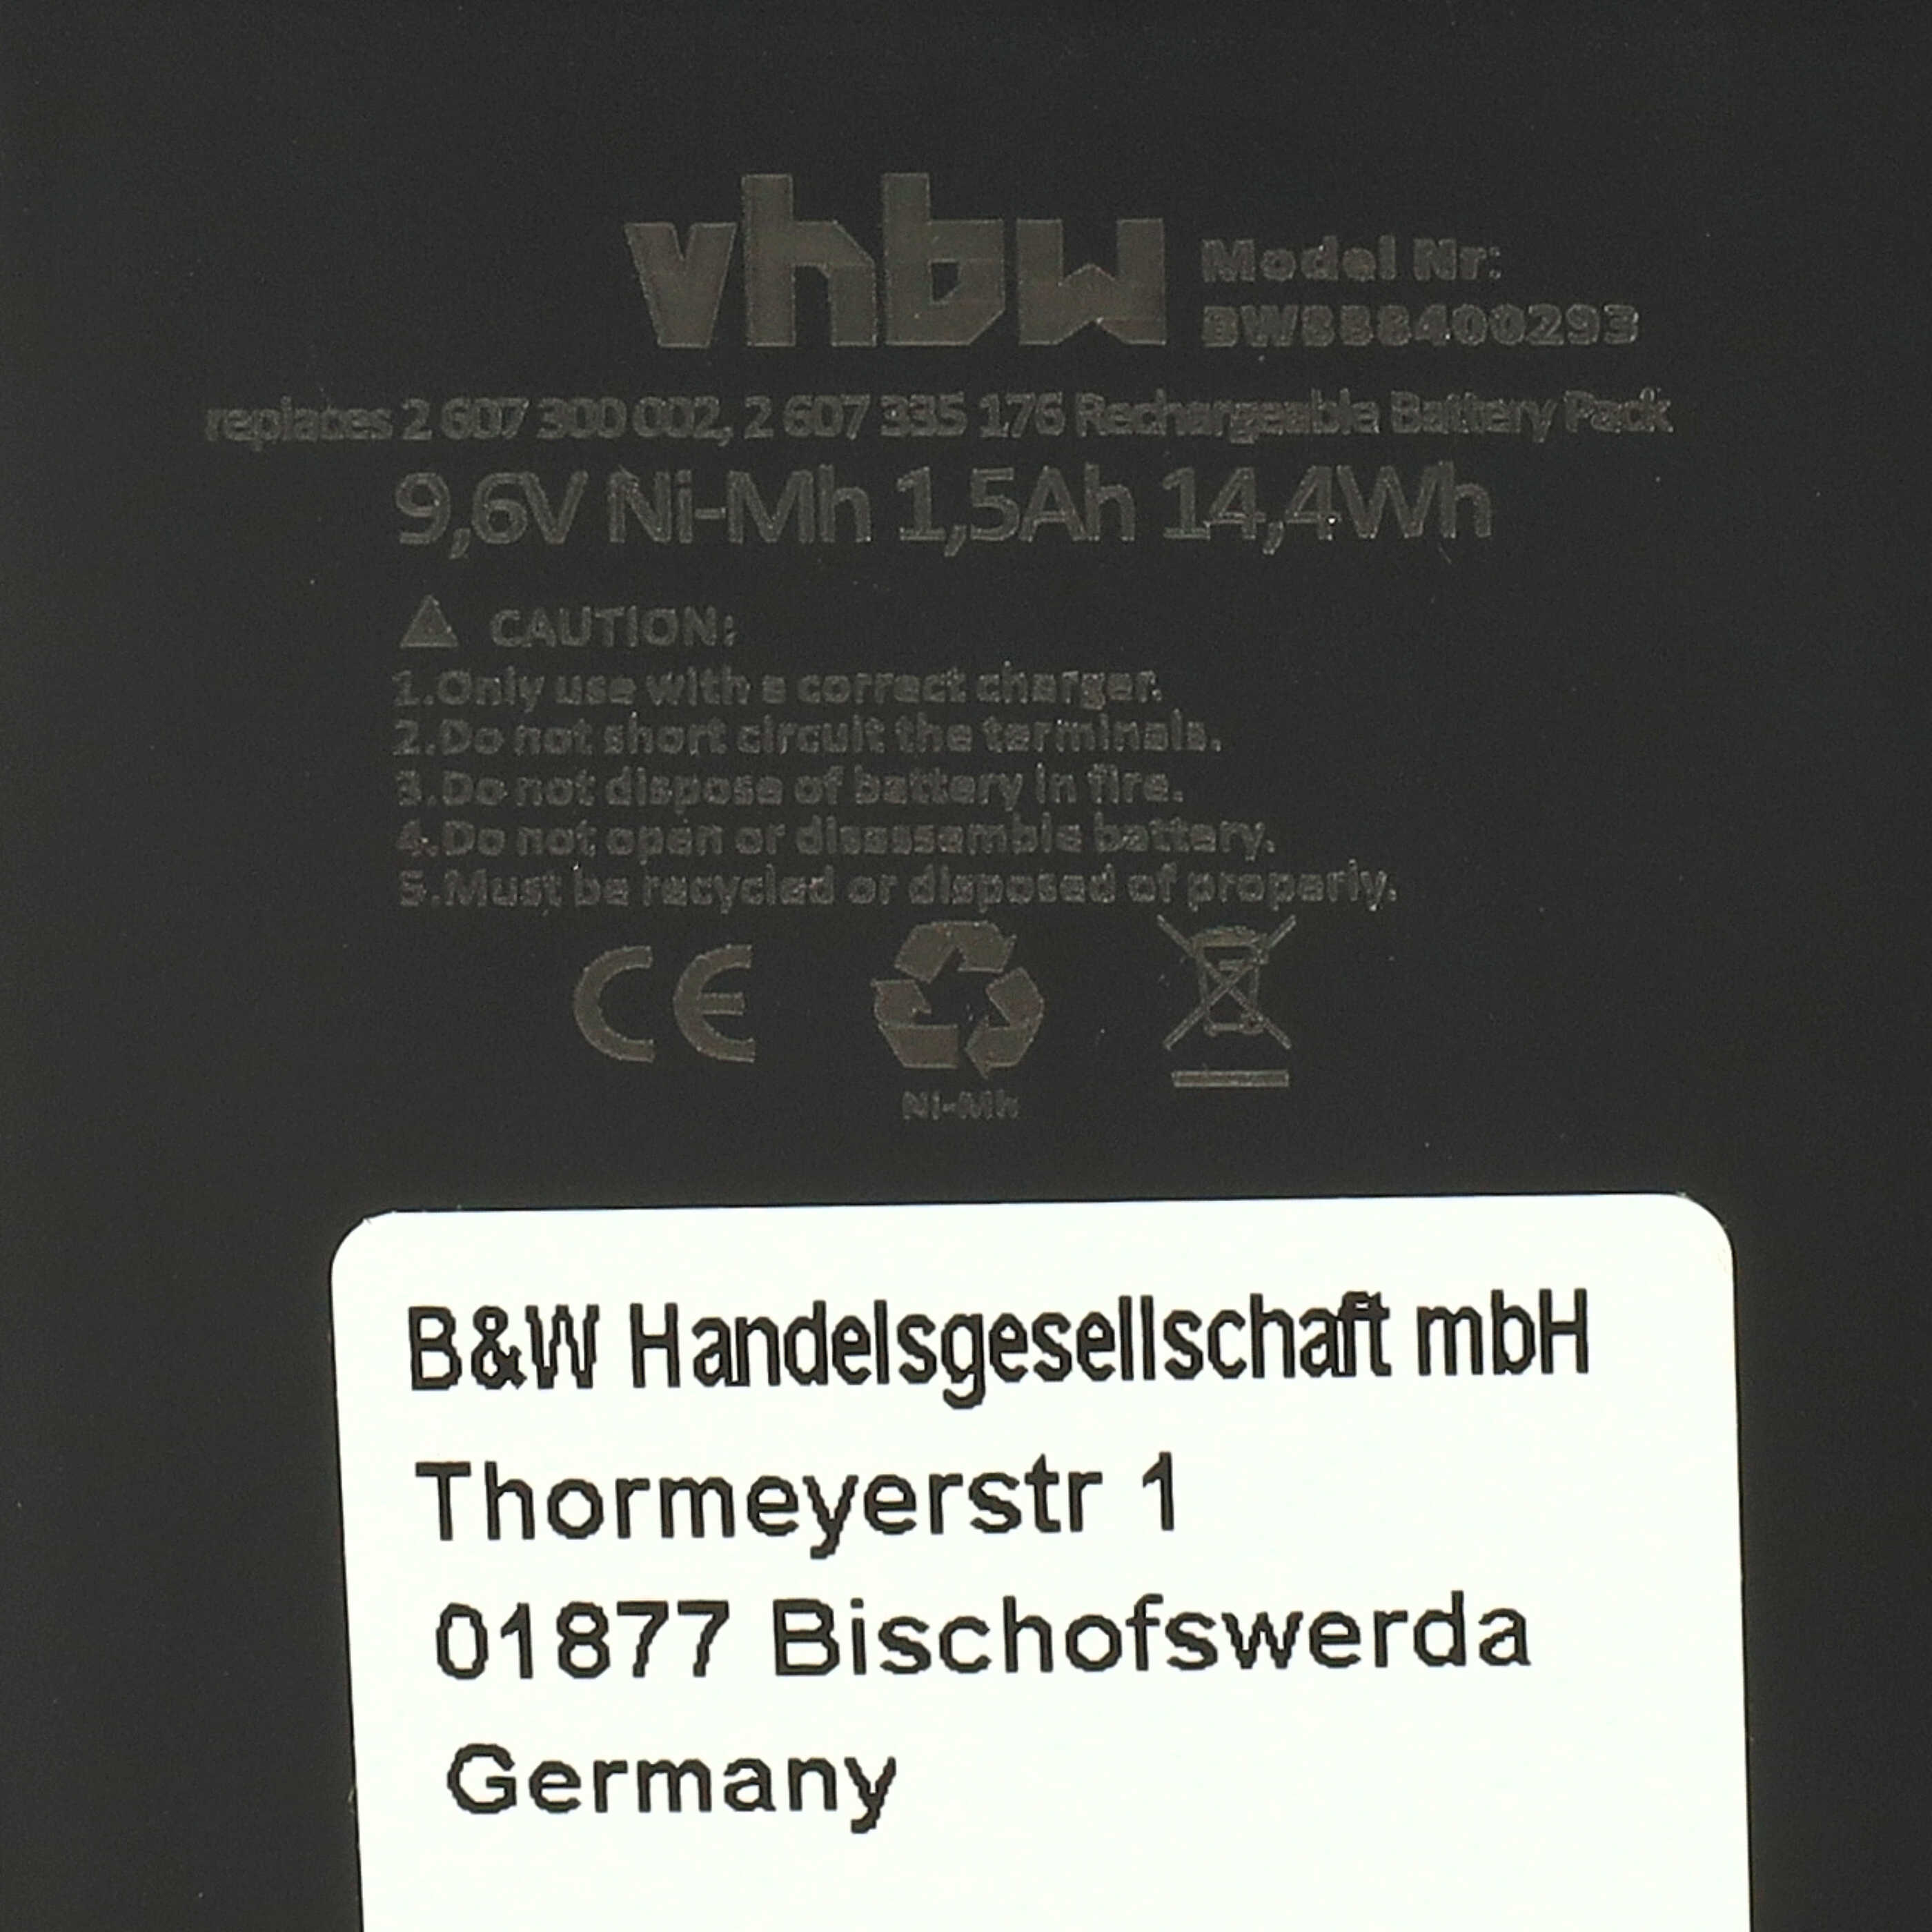 Akumulator do elektronarzędzi zamiennik Bosch 2607300002, 26073000002, 2 607 3000 002 - 1500 mAh, 9,6 V, NiMH